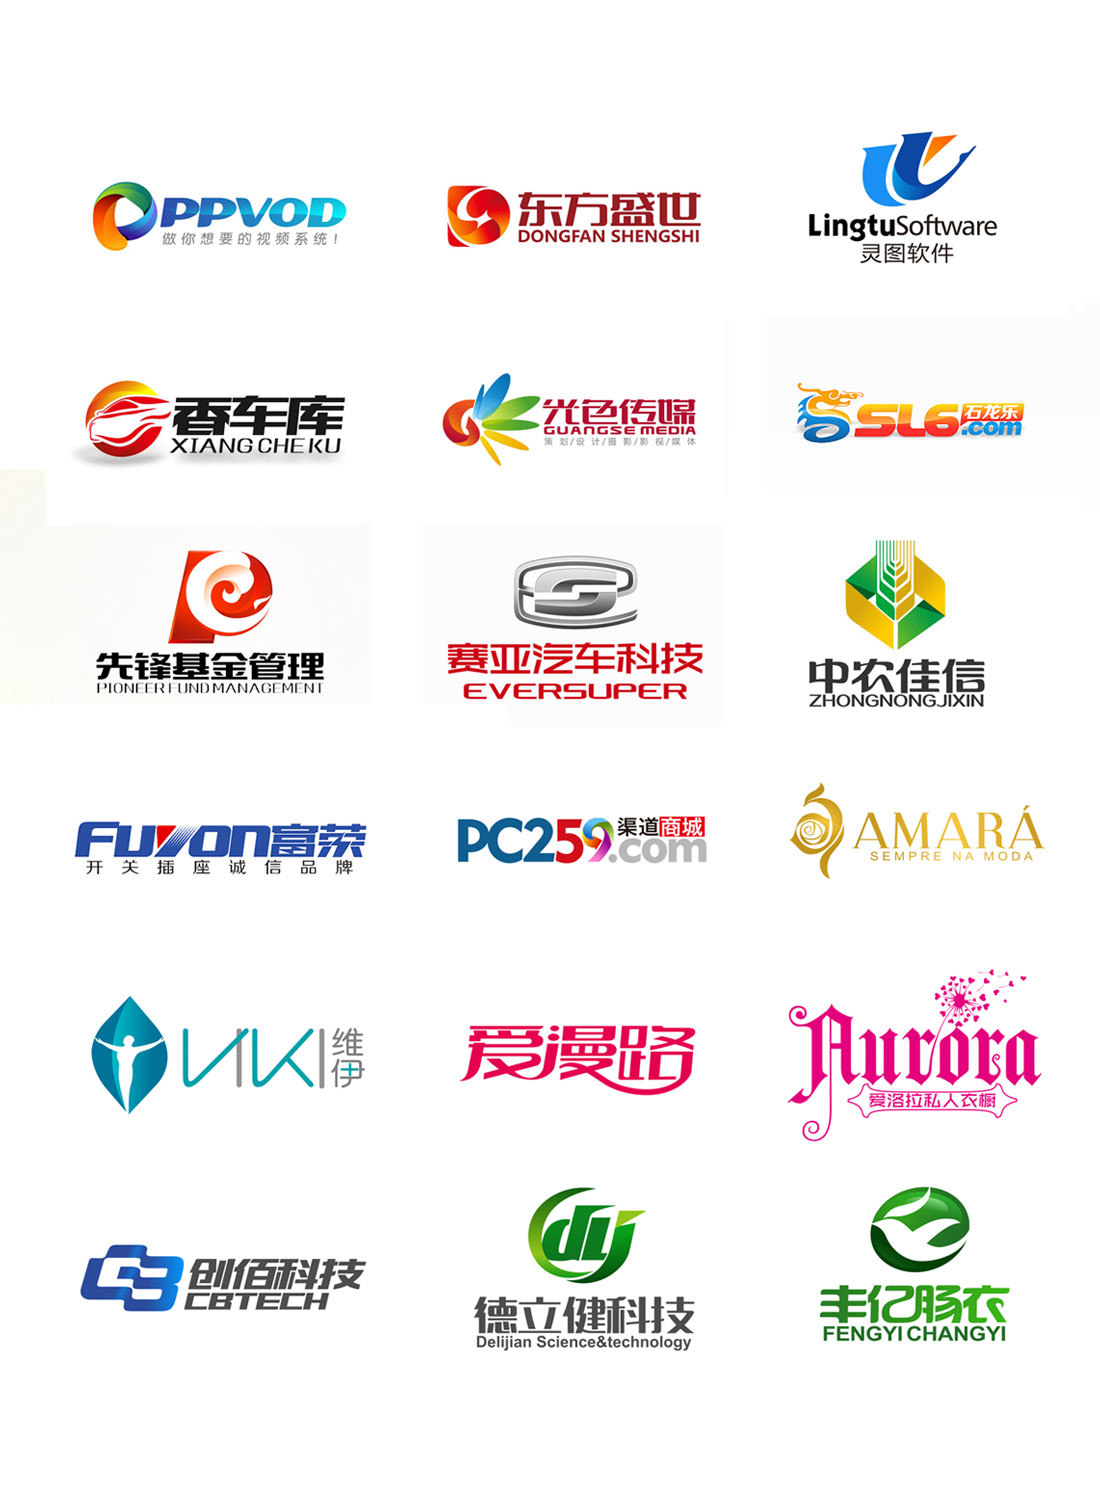 【手机八戒贺岁】logo设计/ 企业/组织机构/媒体/互联网